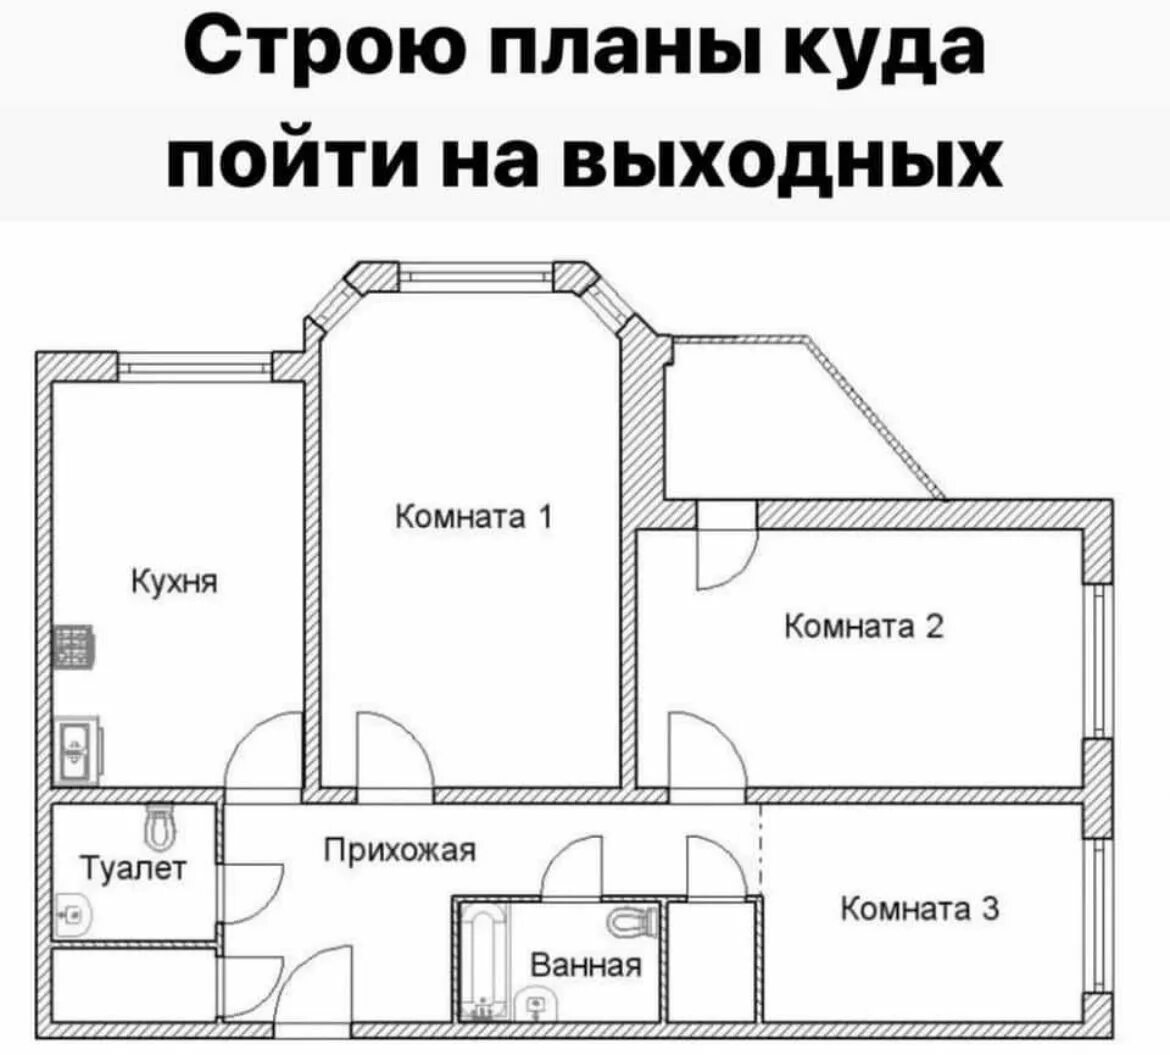 План квартиры комнаты. Схема квартиры. Чертеж квартиры. Схема трехкомнатной квартиры. Планировка квартиры чертеж.